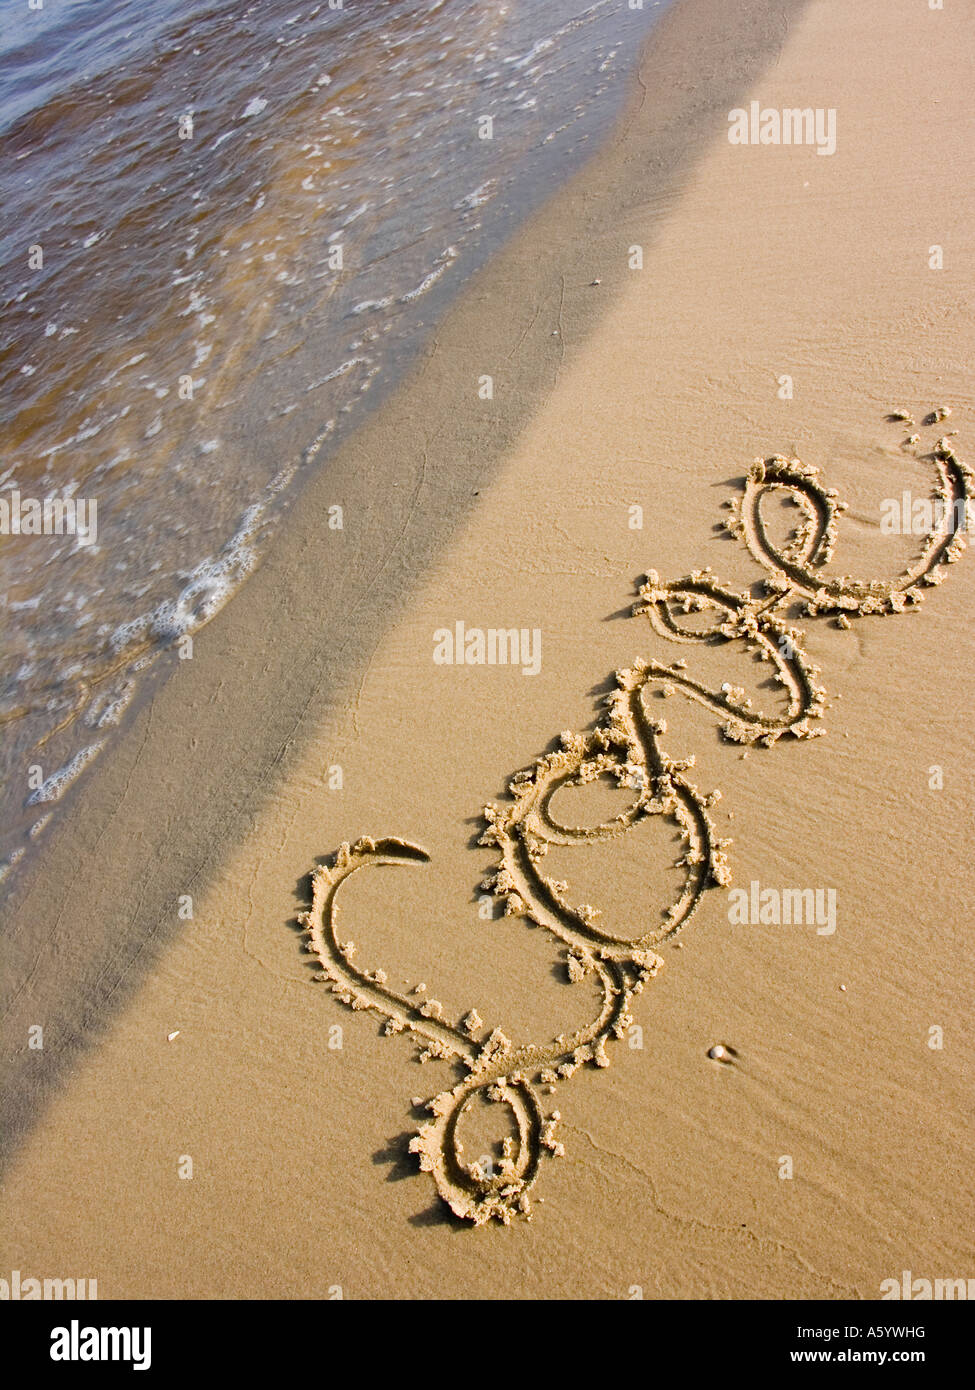 Scritta I love you sulla sabbia Stock Photo